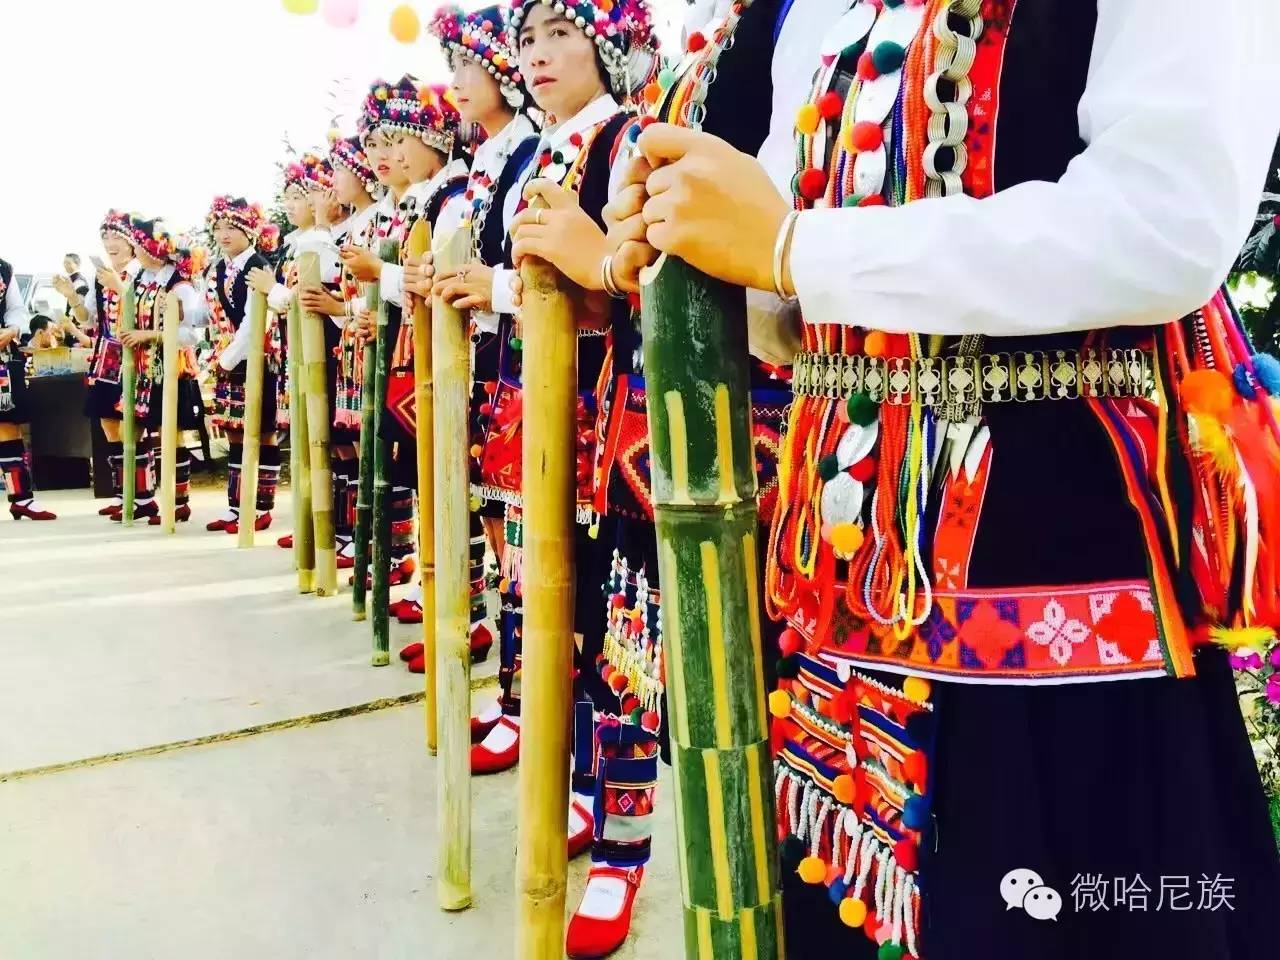 哈尼族服饰——民族文化 让全世界了解我们古老的哈尼民族!